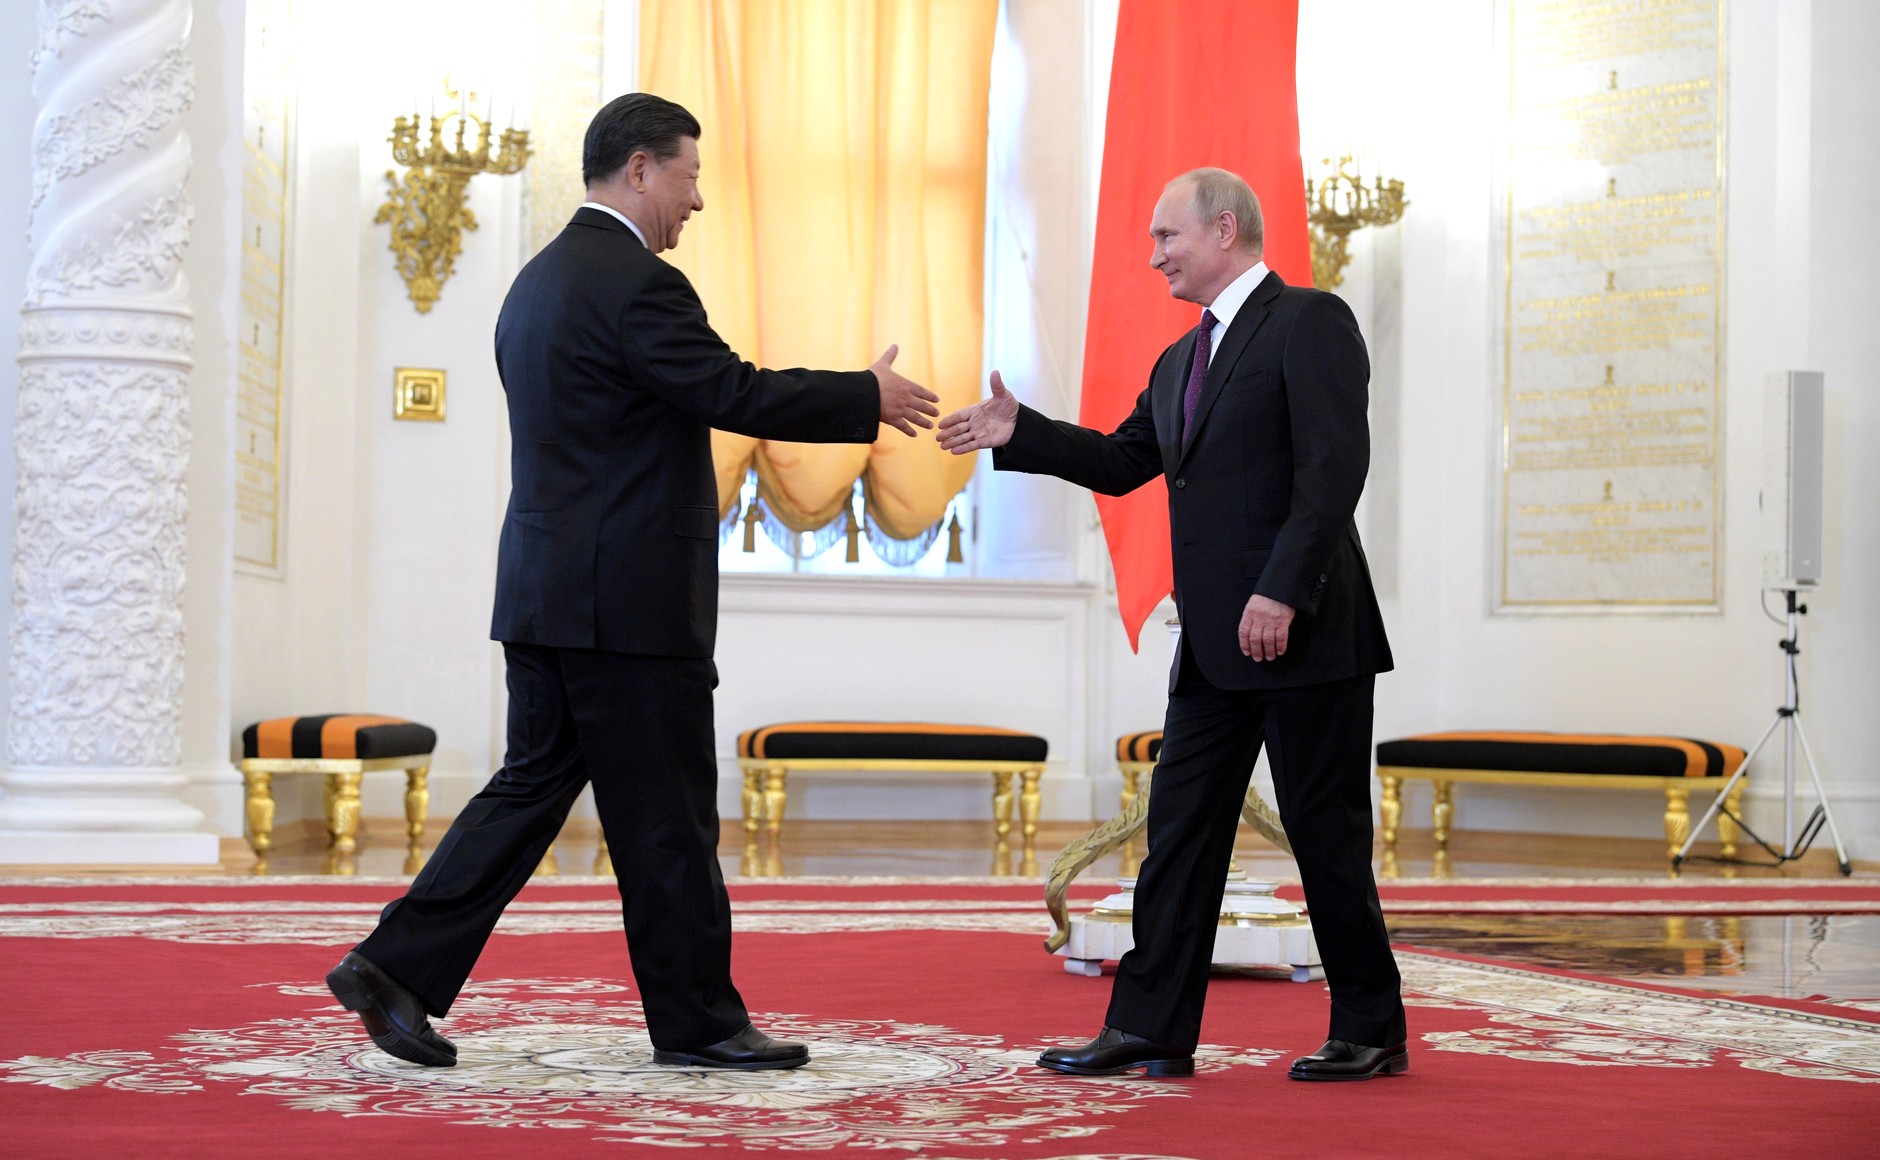 President Xi Jinping shaking hands with Vladimir Putin